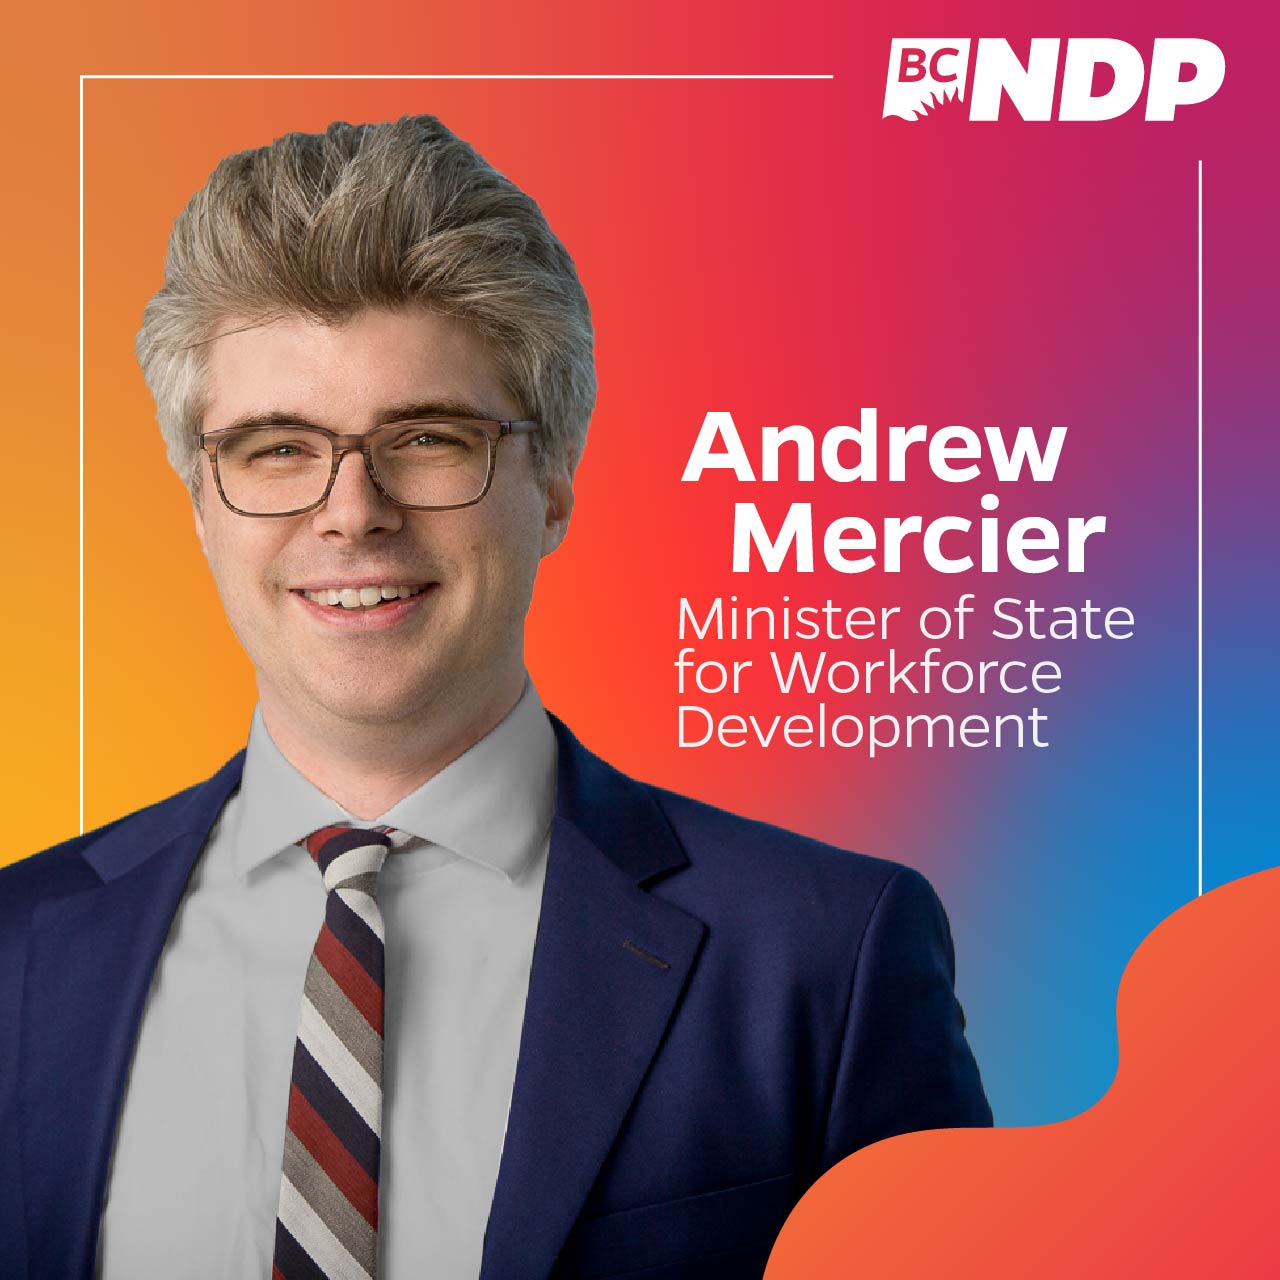 Andrew Mercier